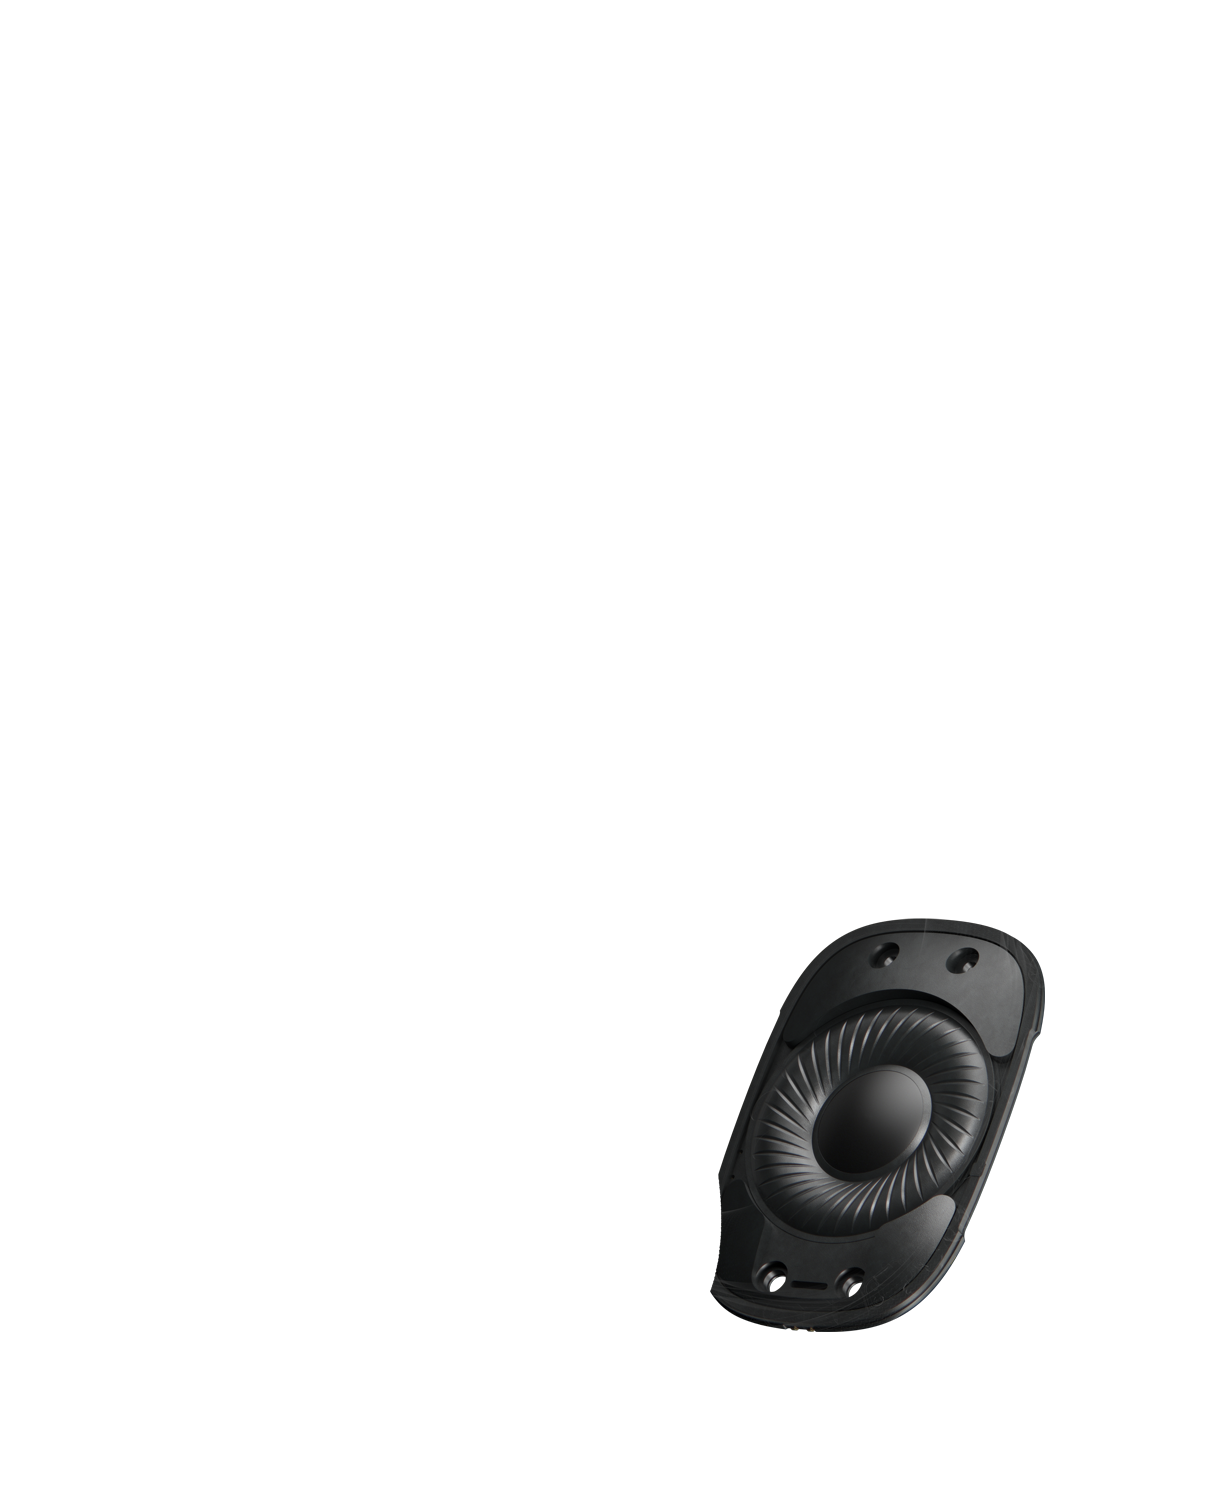 „AirPods Max“ vidaus vaizdas, kuriame akcentuojamas ausies kaušelio centre esantis didelis garsiakalbis, atkuriantis kokybišką garsą.